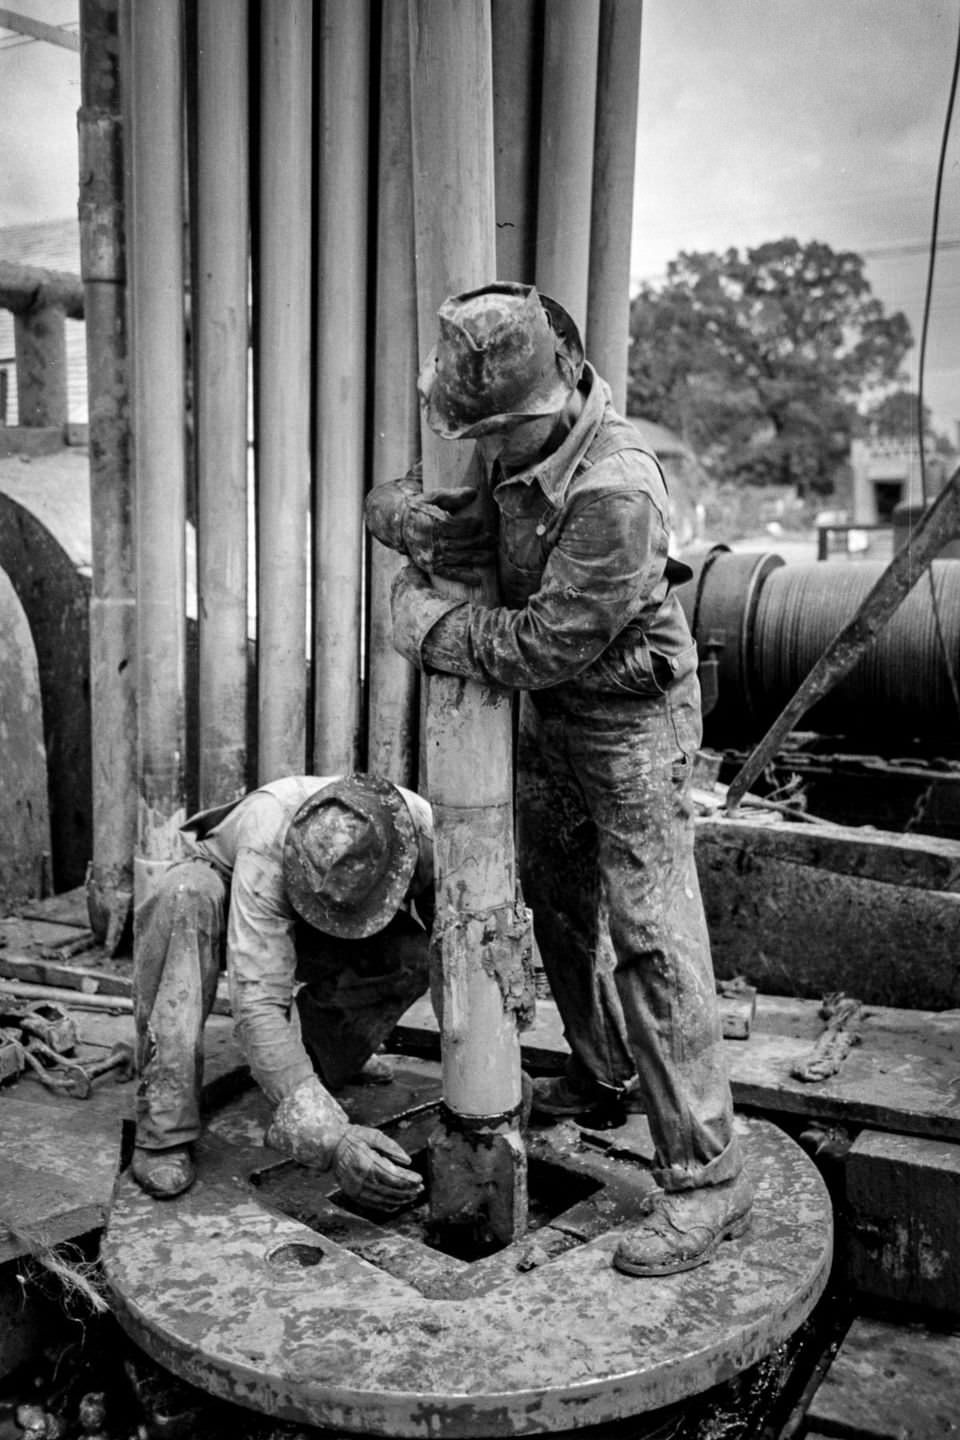 Kilgore's Oil Frontier: Russell Lee's Photographic Journey of Hardworking Men in the 1930s